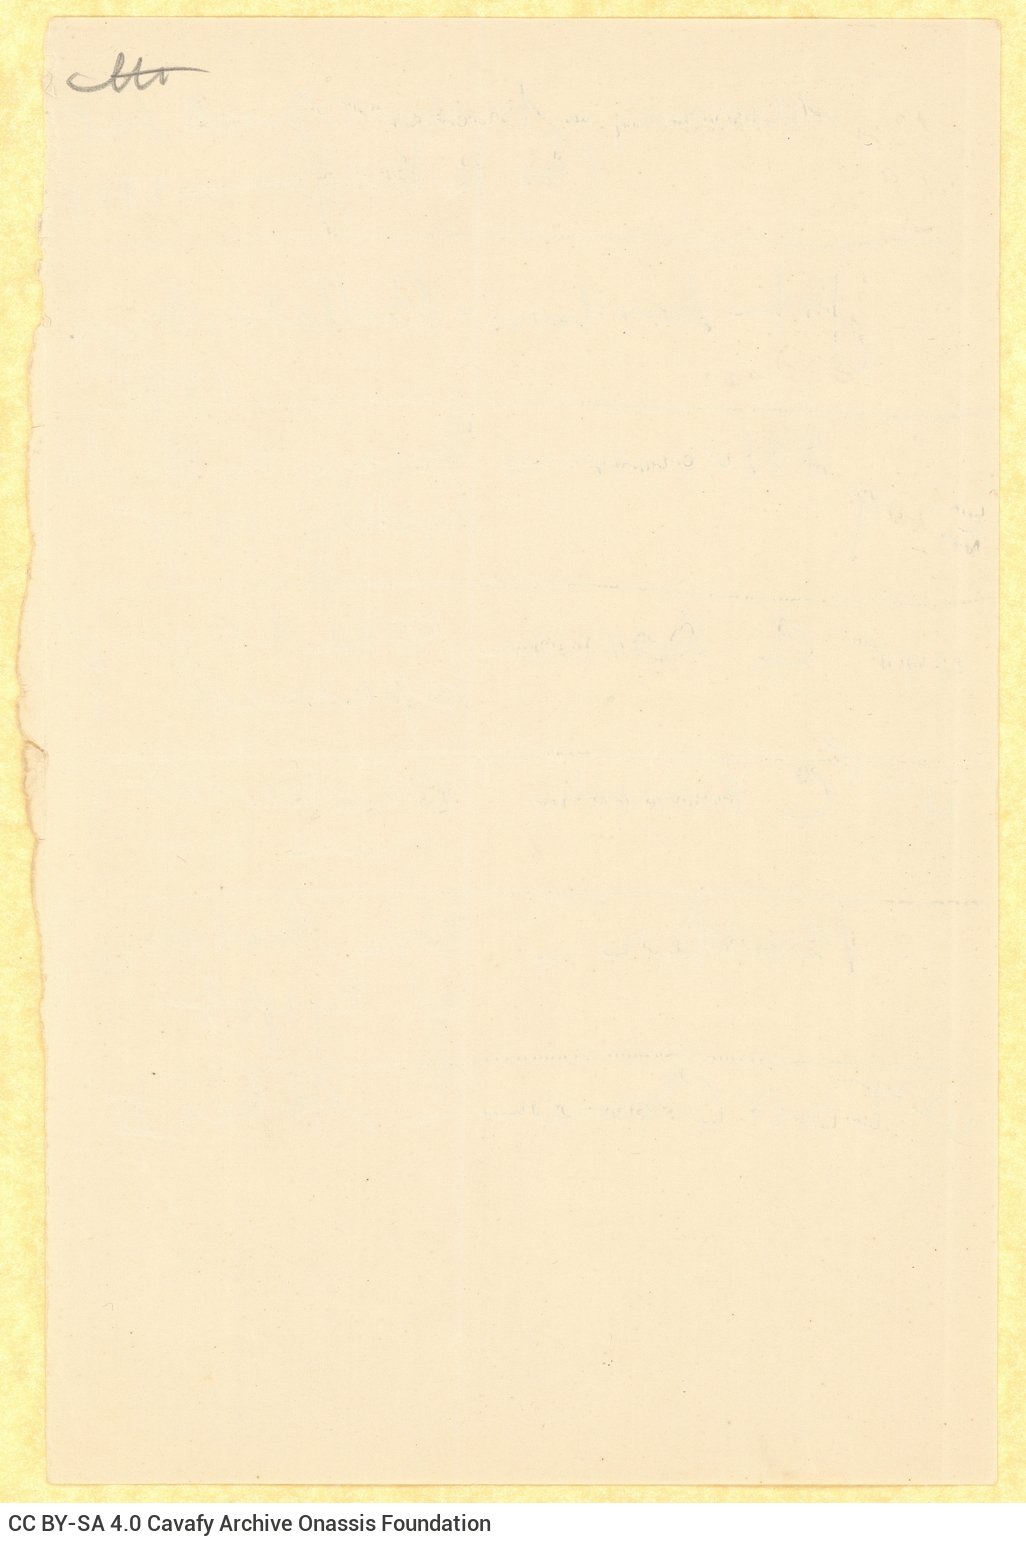 Χειρόγραφος κατάλογος βιβλίων και περιοδικών, γραμμένος σε τρία τετ